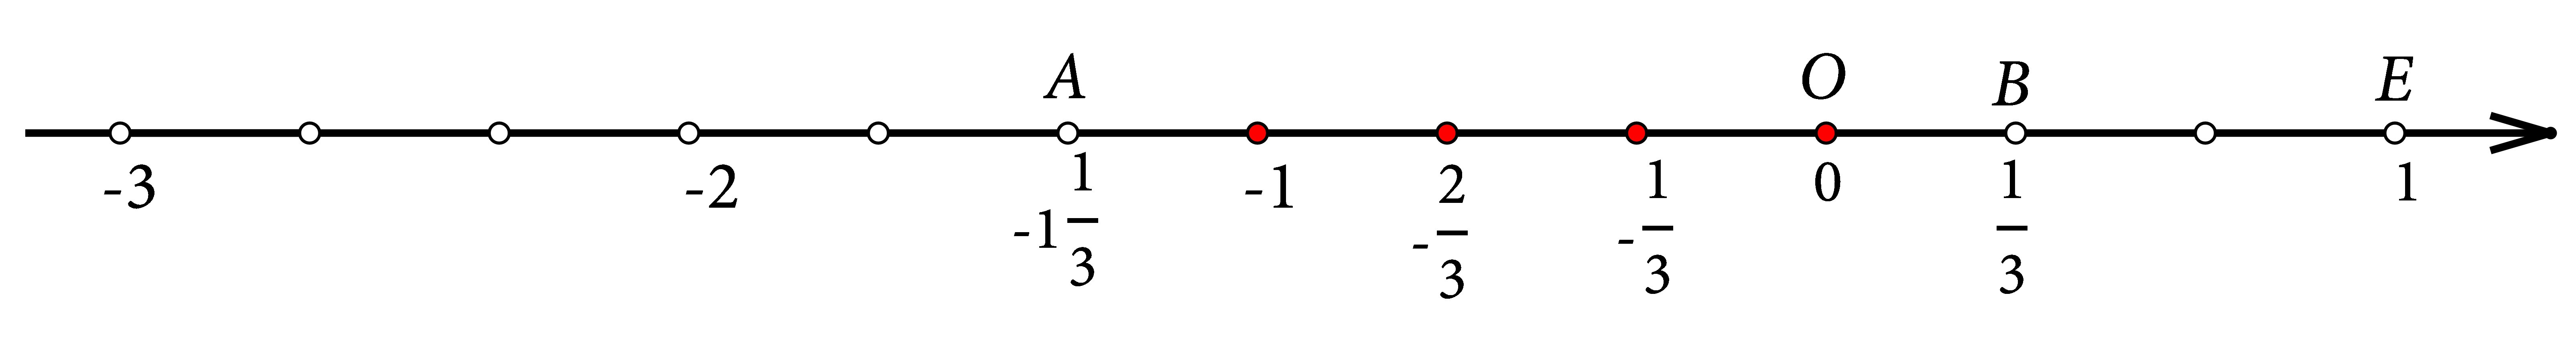 Slika prikazuje brojevni pravac s točkama A(-1 1/3) i B(1/3)  te točke koje se nalaze između tih dviju točaka, čiji je brojnik cijeli broj, a nazivnik broj 3.